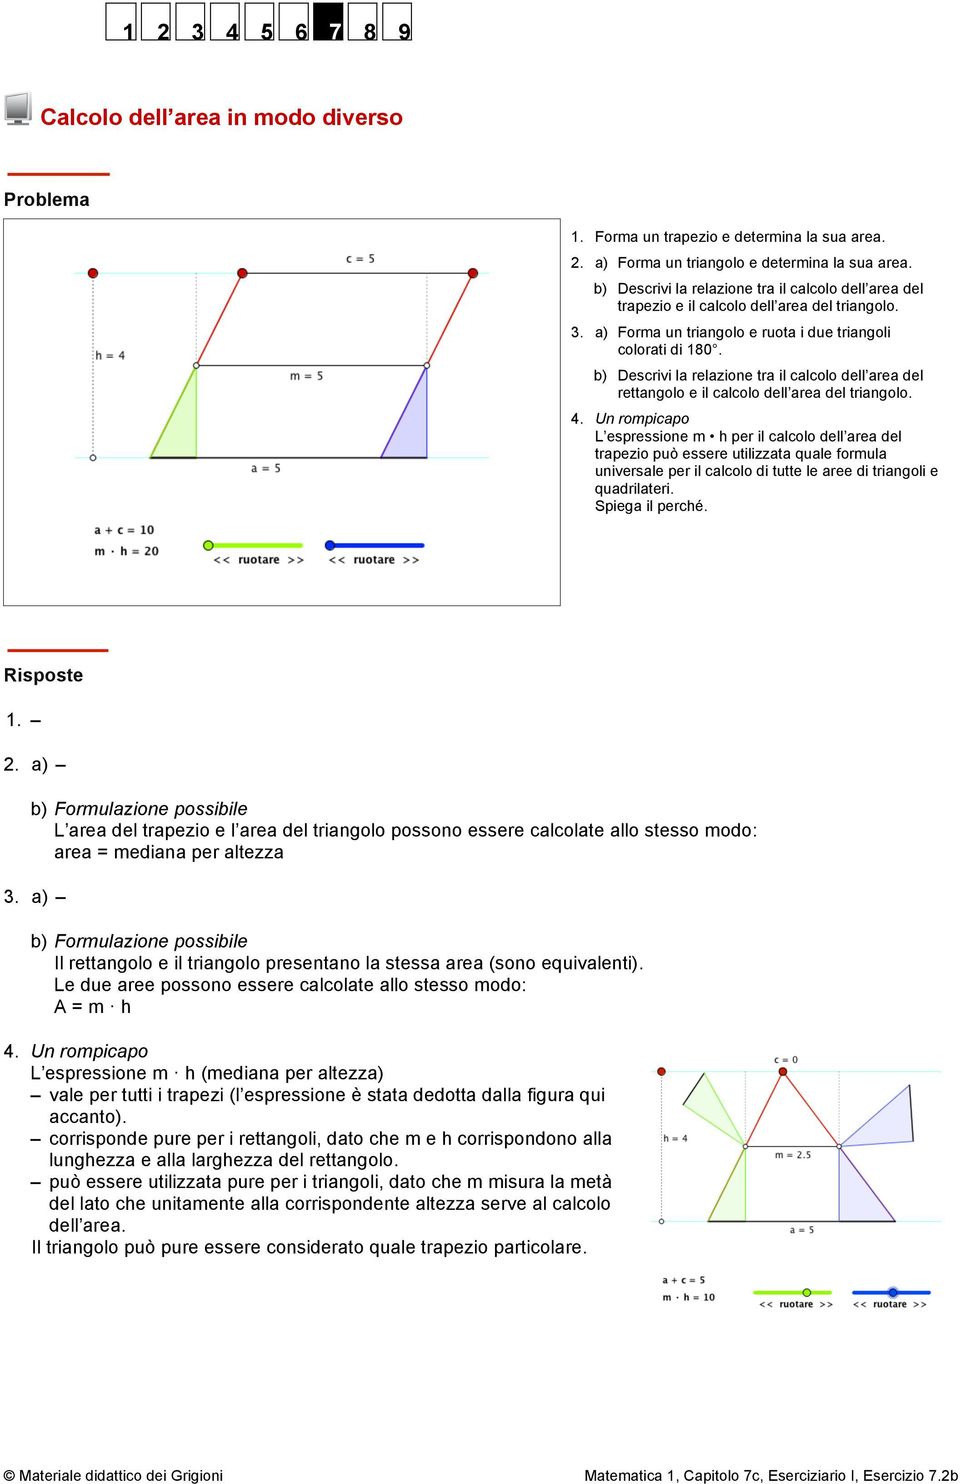 b) Descrivi la relazione tra il calcolo dell area del rettangolo e il calcolo dell area del triangolo. 4.